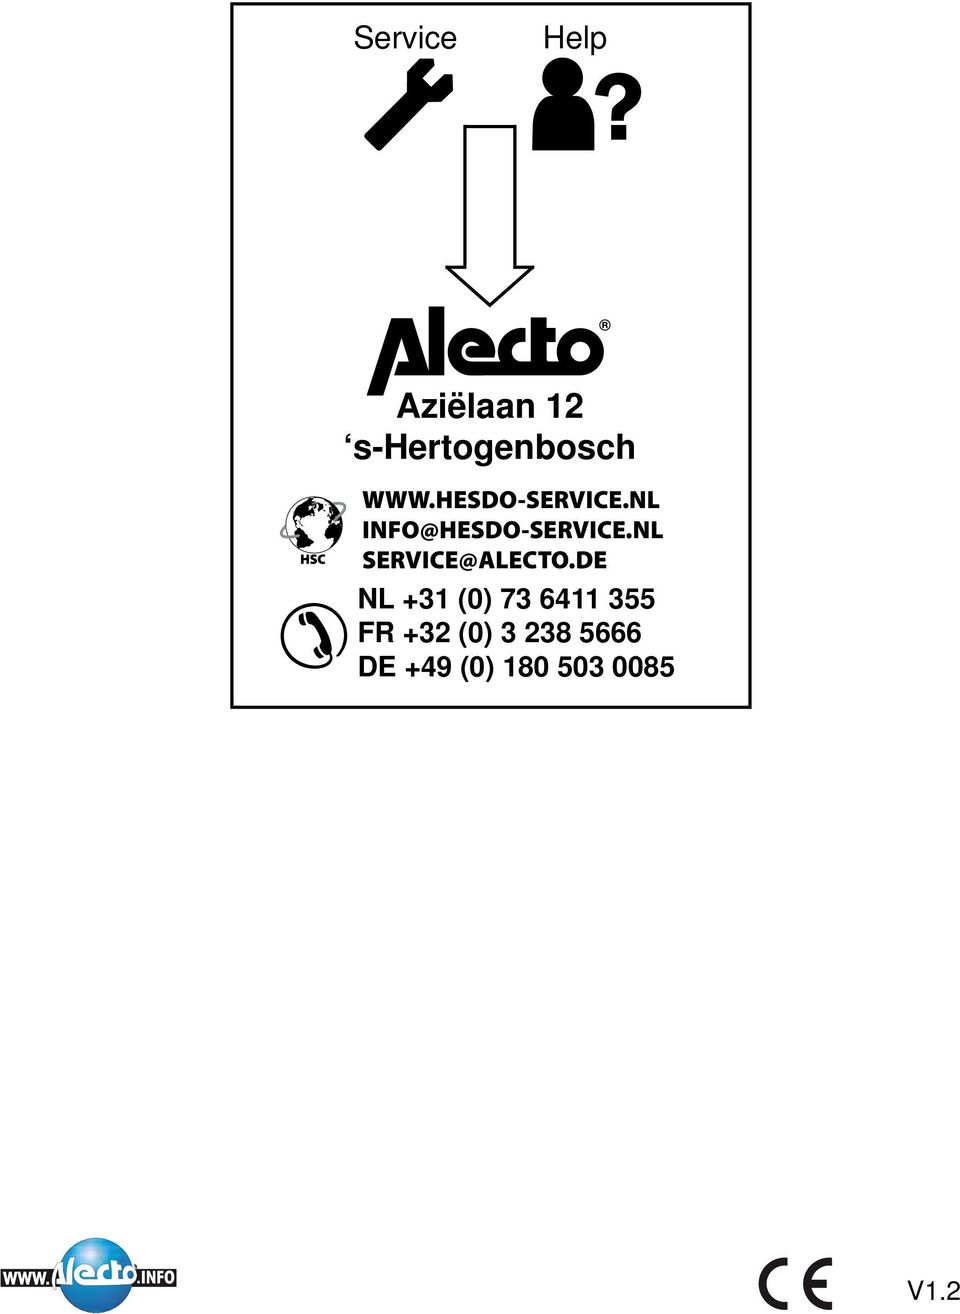 NL SERVICE@ALECTO.